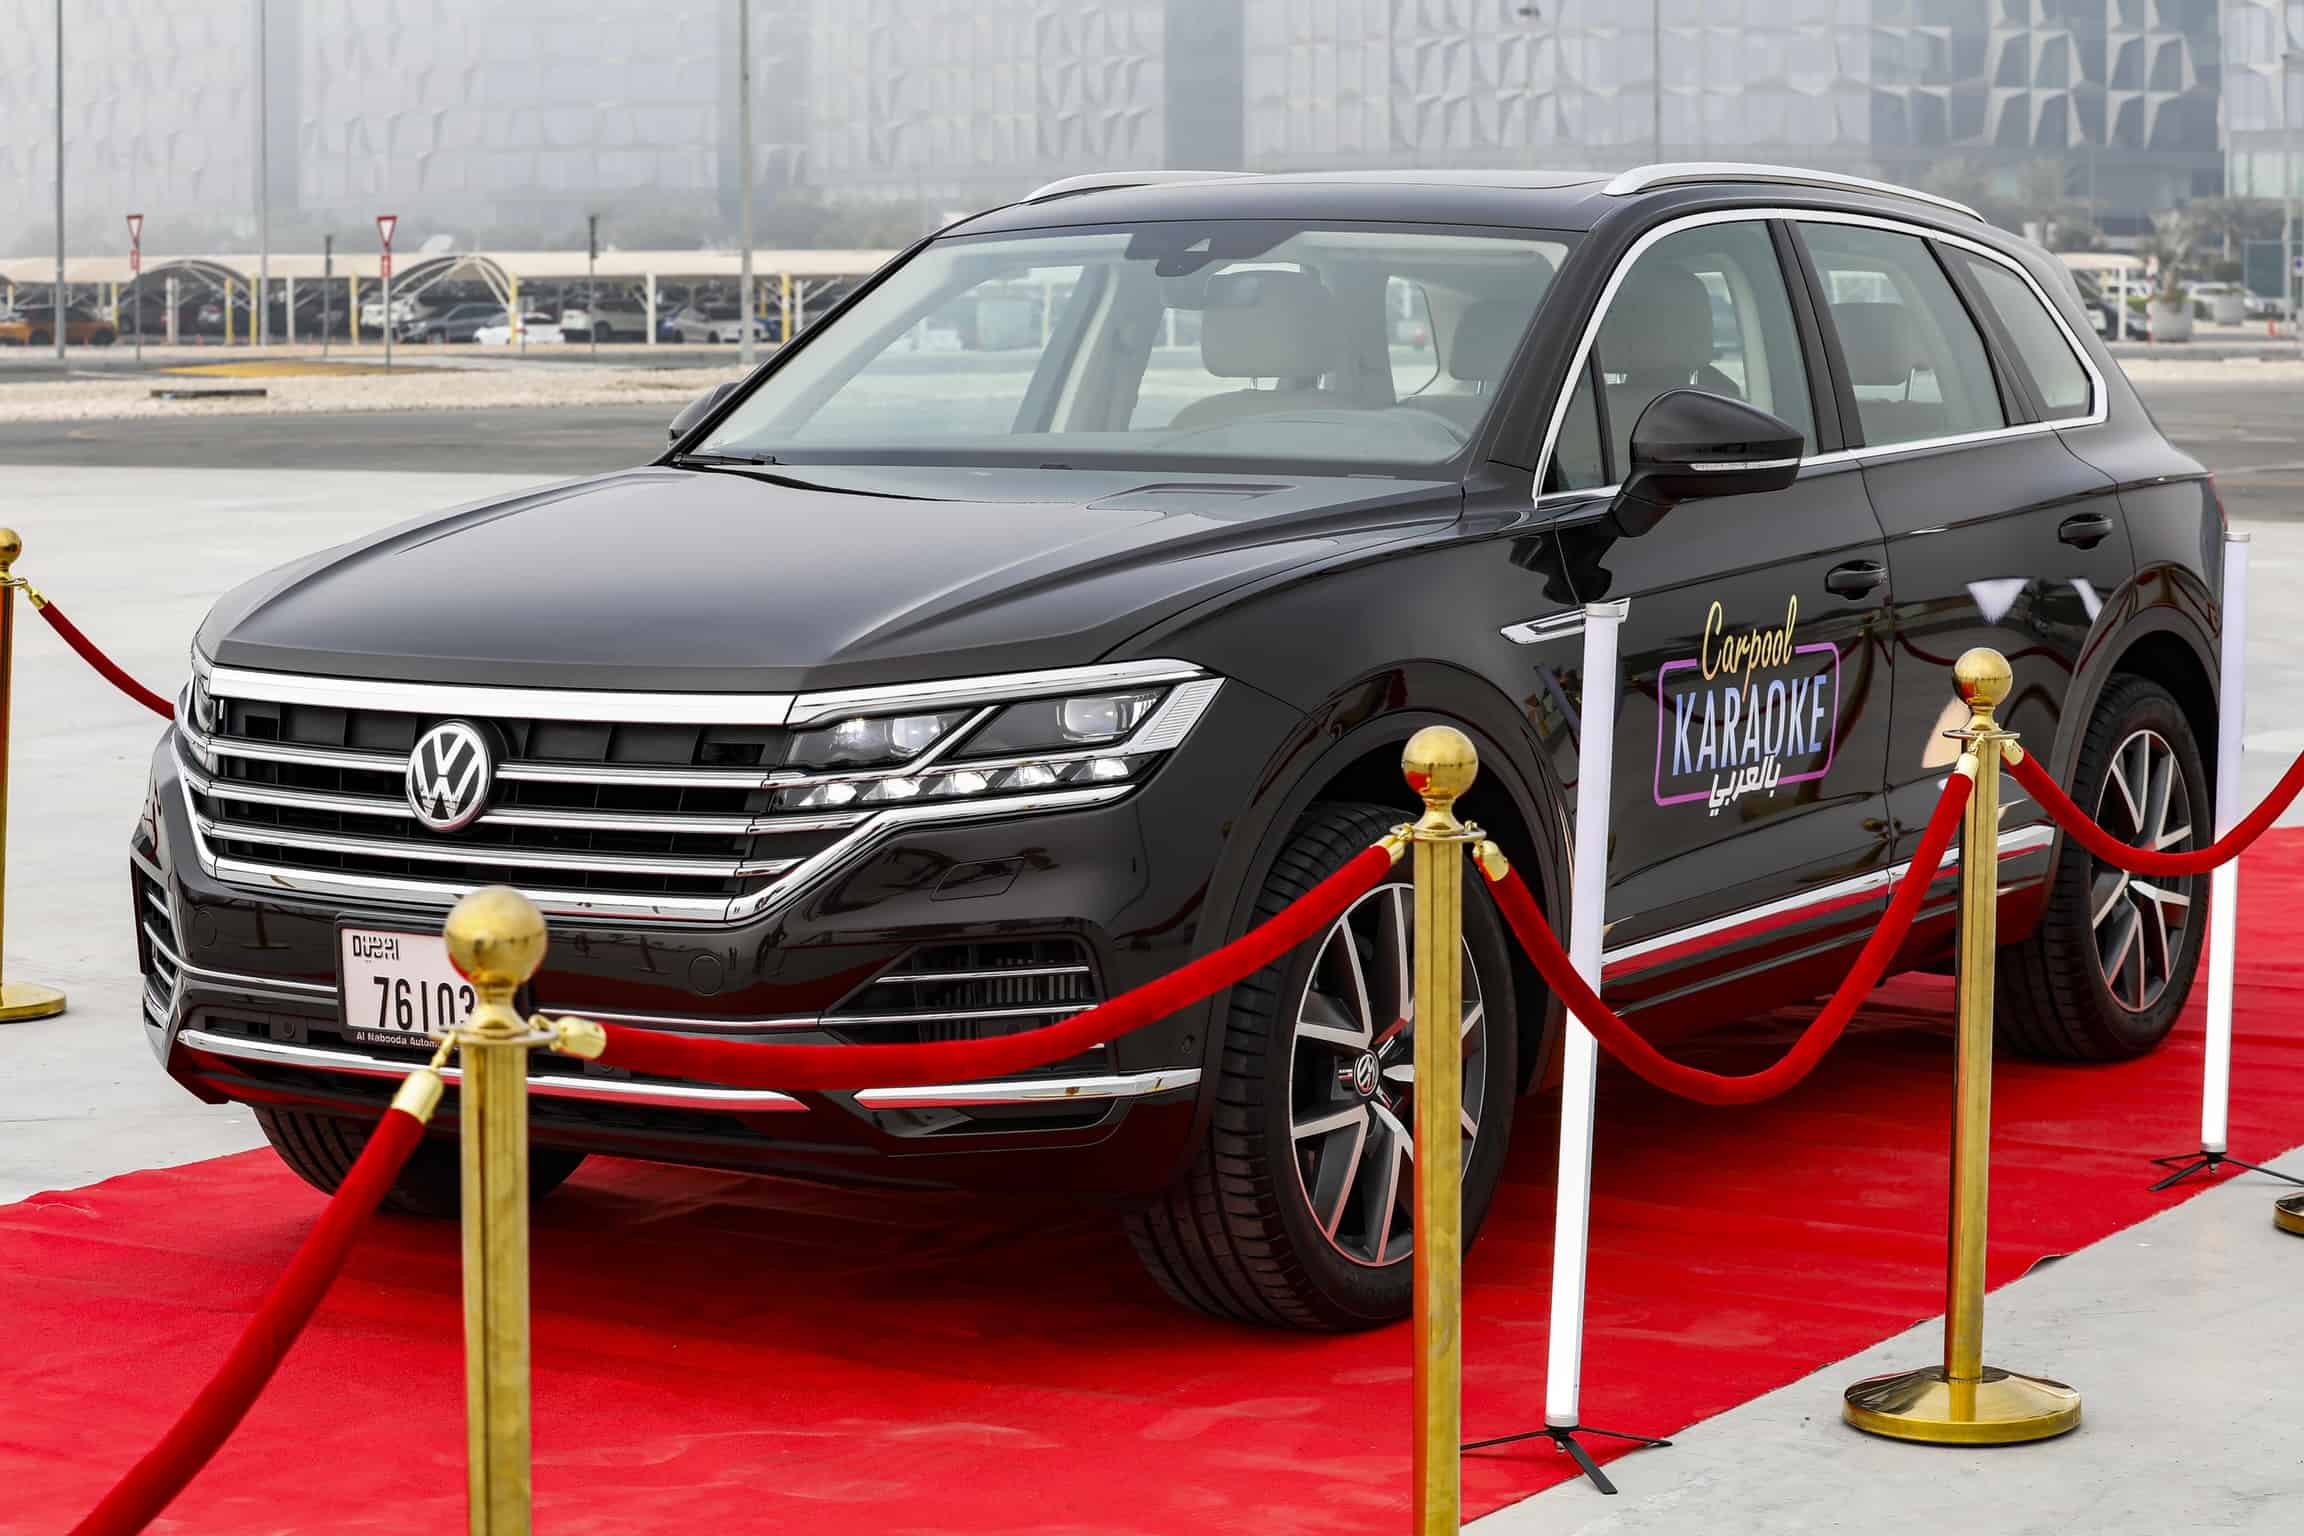 Volkswagen Middle East си сътрудничи с Carpool Karaoke на арабски